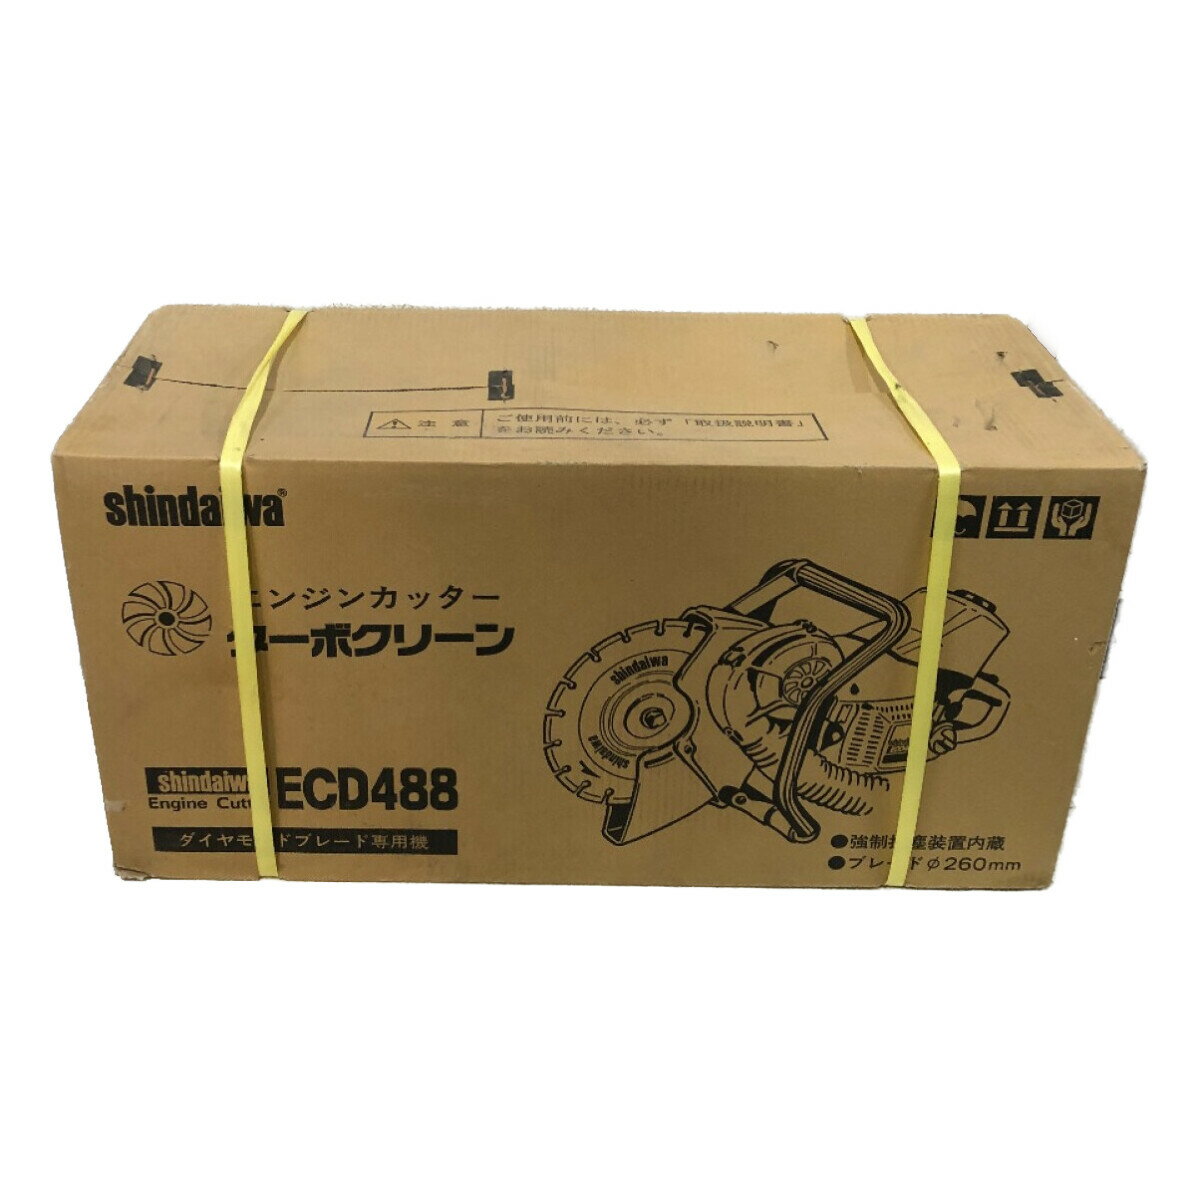 ◇◇【中古】shindaiwa 新ダイワ エンジンカッター コンクリートカッター コードレス式 260mm ECD488-CD レッド Sランク